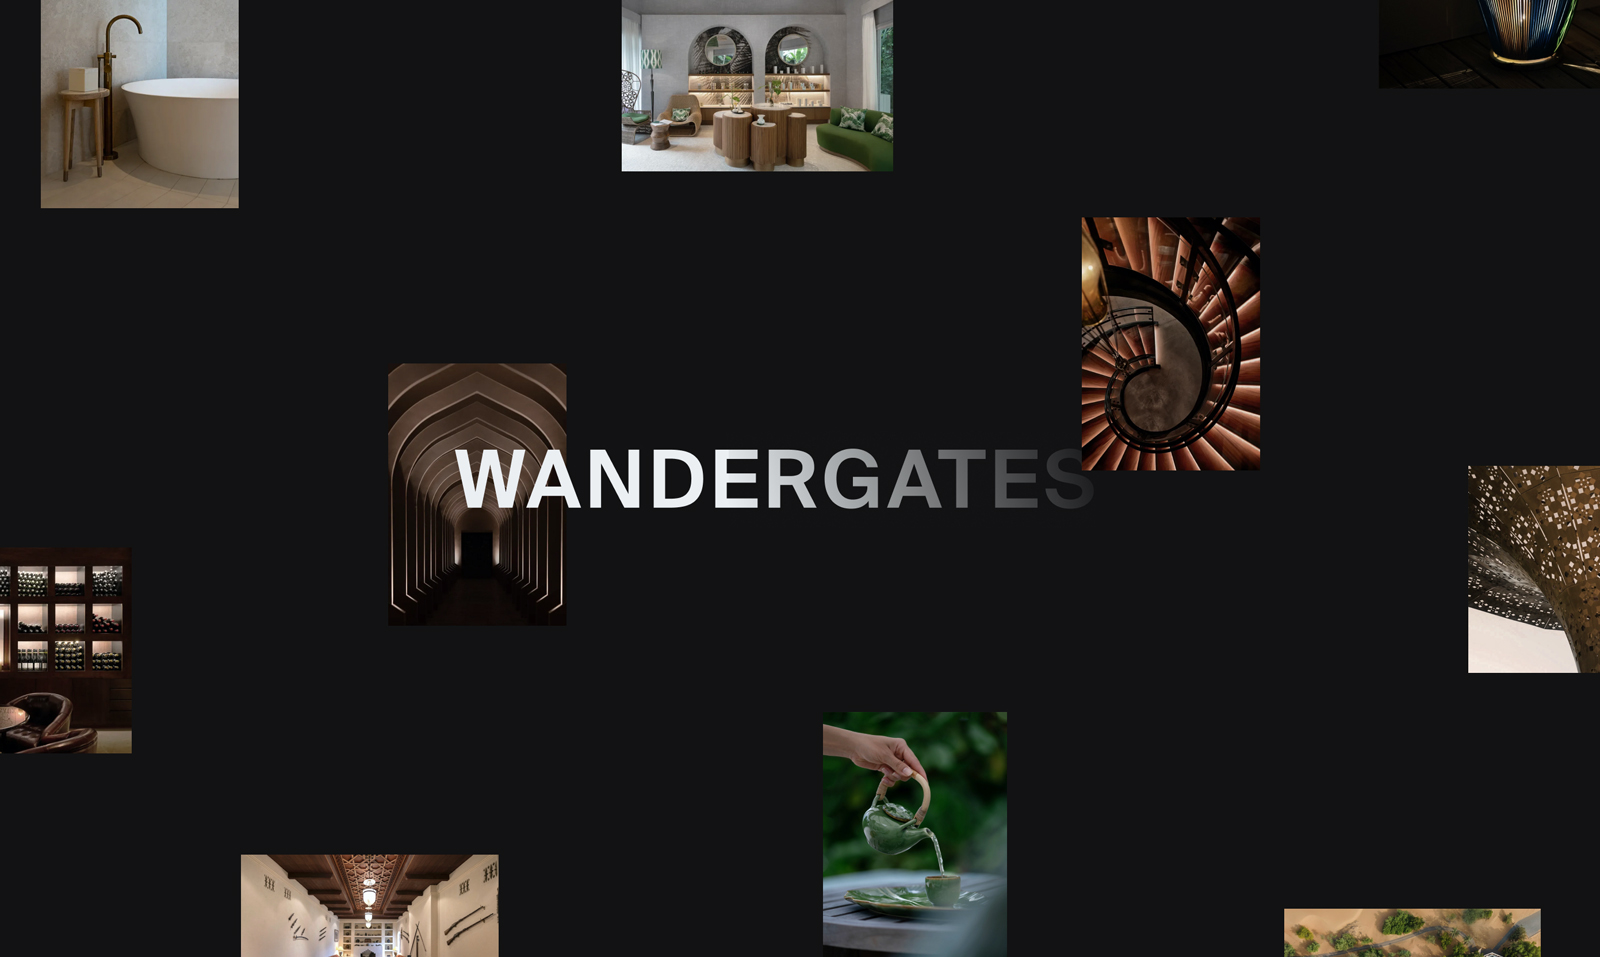 Wandergates Brand Identity by Uniko